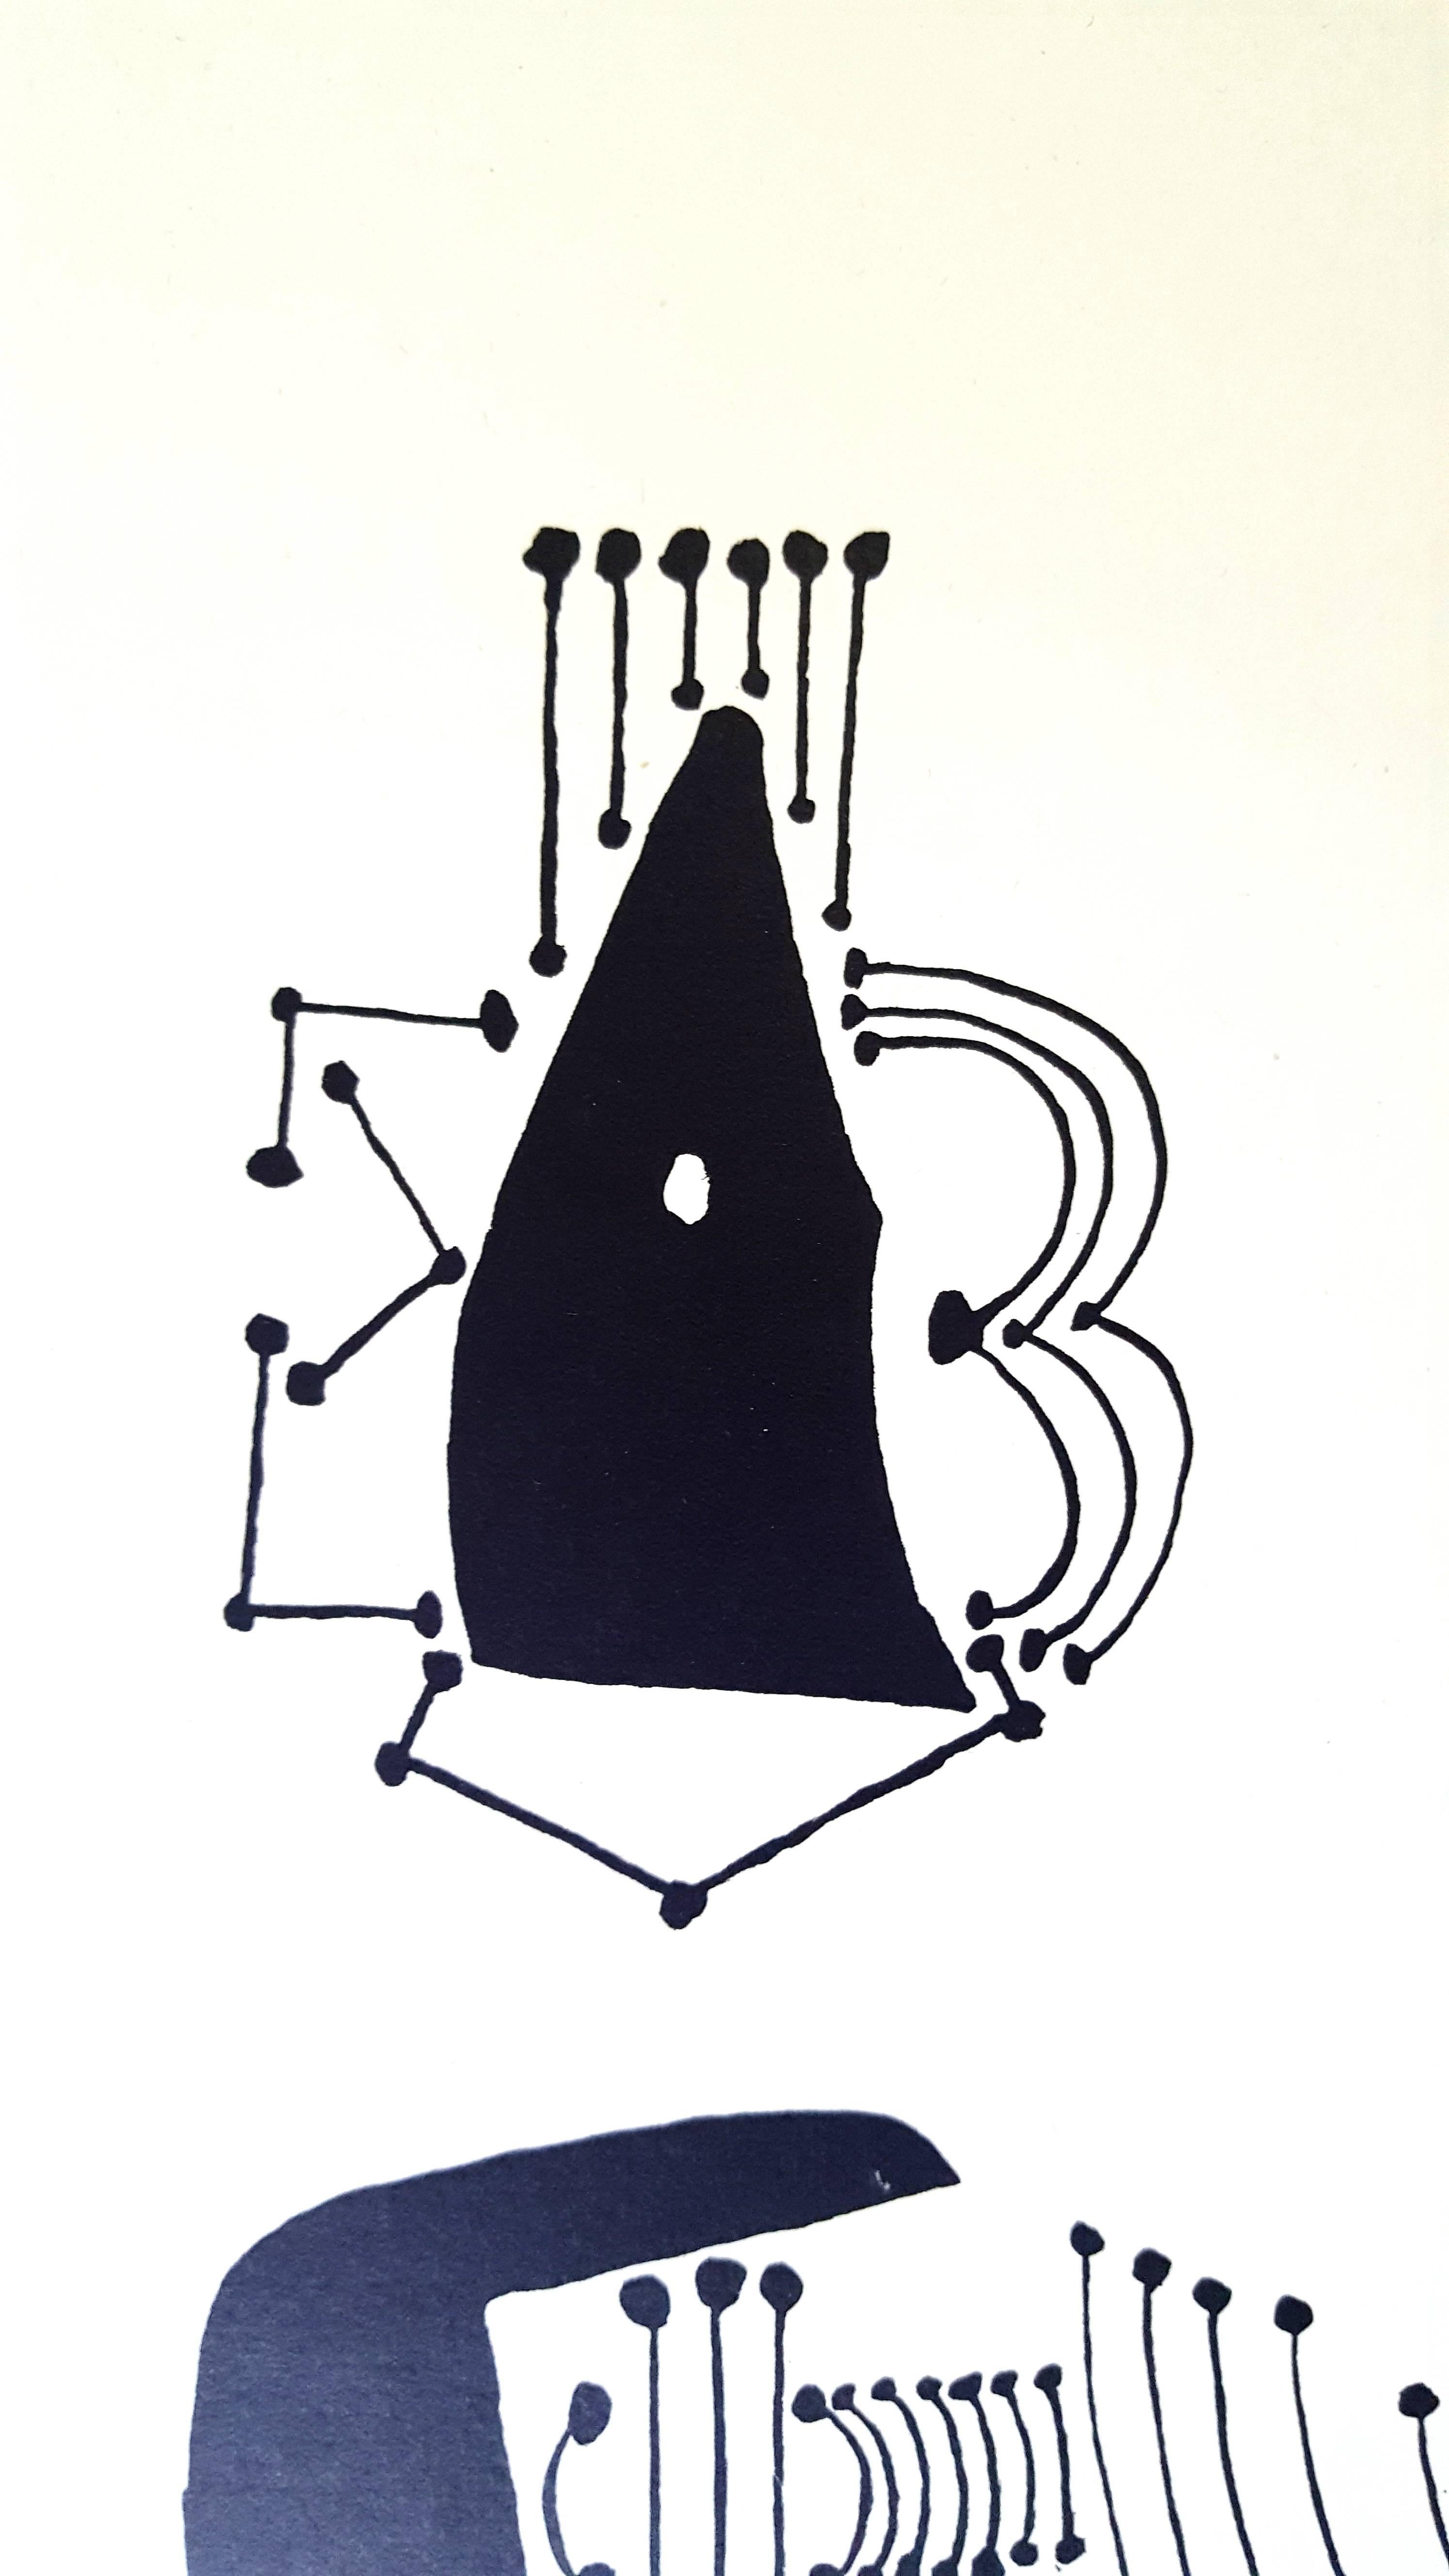 Pablo Picasso (nach) 
Helene Chez Archimede

Medium: Gravur auf Holz von Georges Aubert
Abmessungen: 44 x 33 cm
Mappe: Helen Chez Archimede
Jahr: 1955
Auflage: 240 (Es handelt sich um eines der 140 Exemplare, die für die Mitglieder des Neuen Pariser